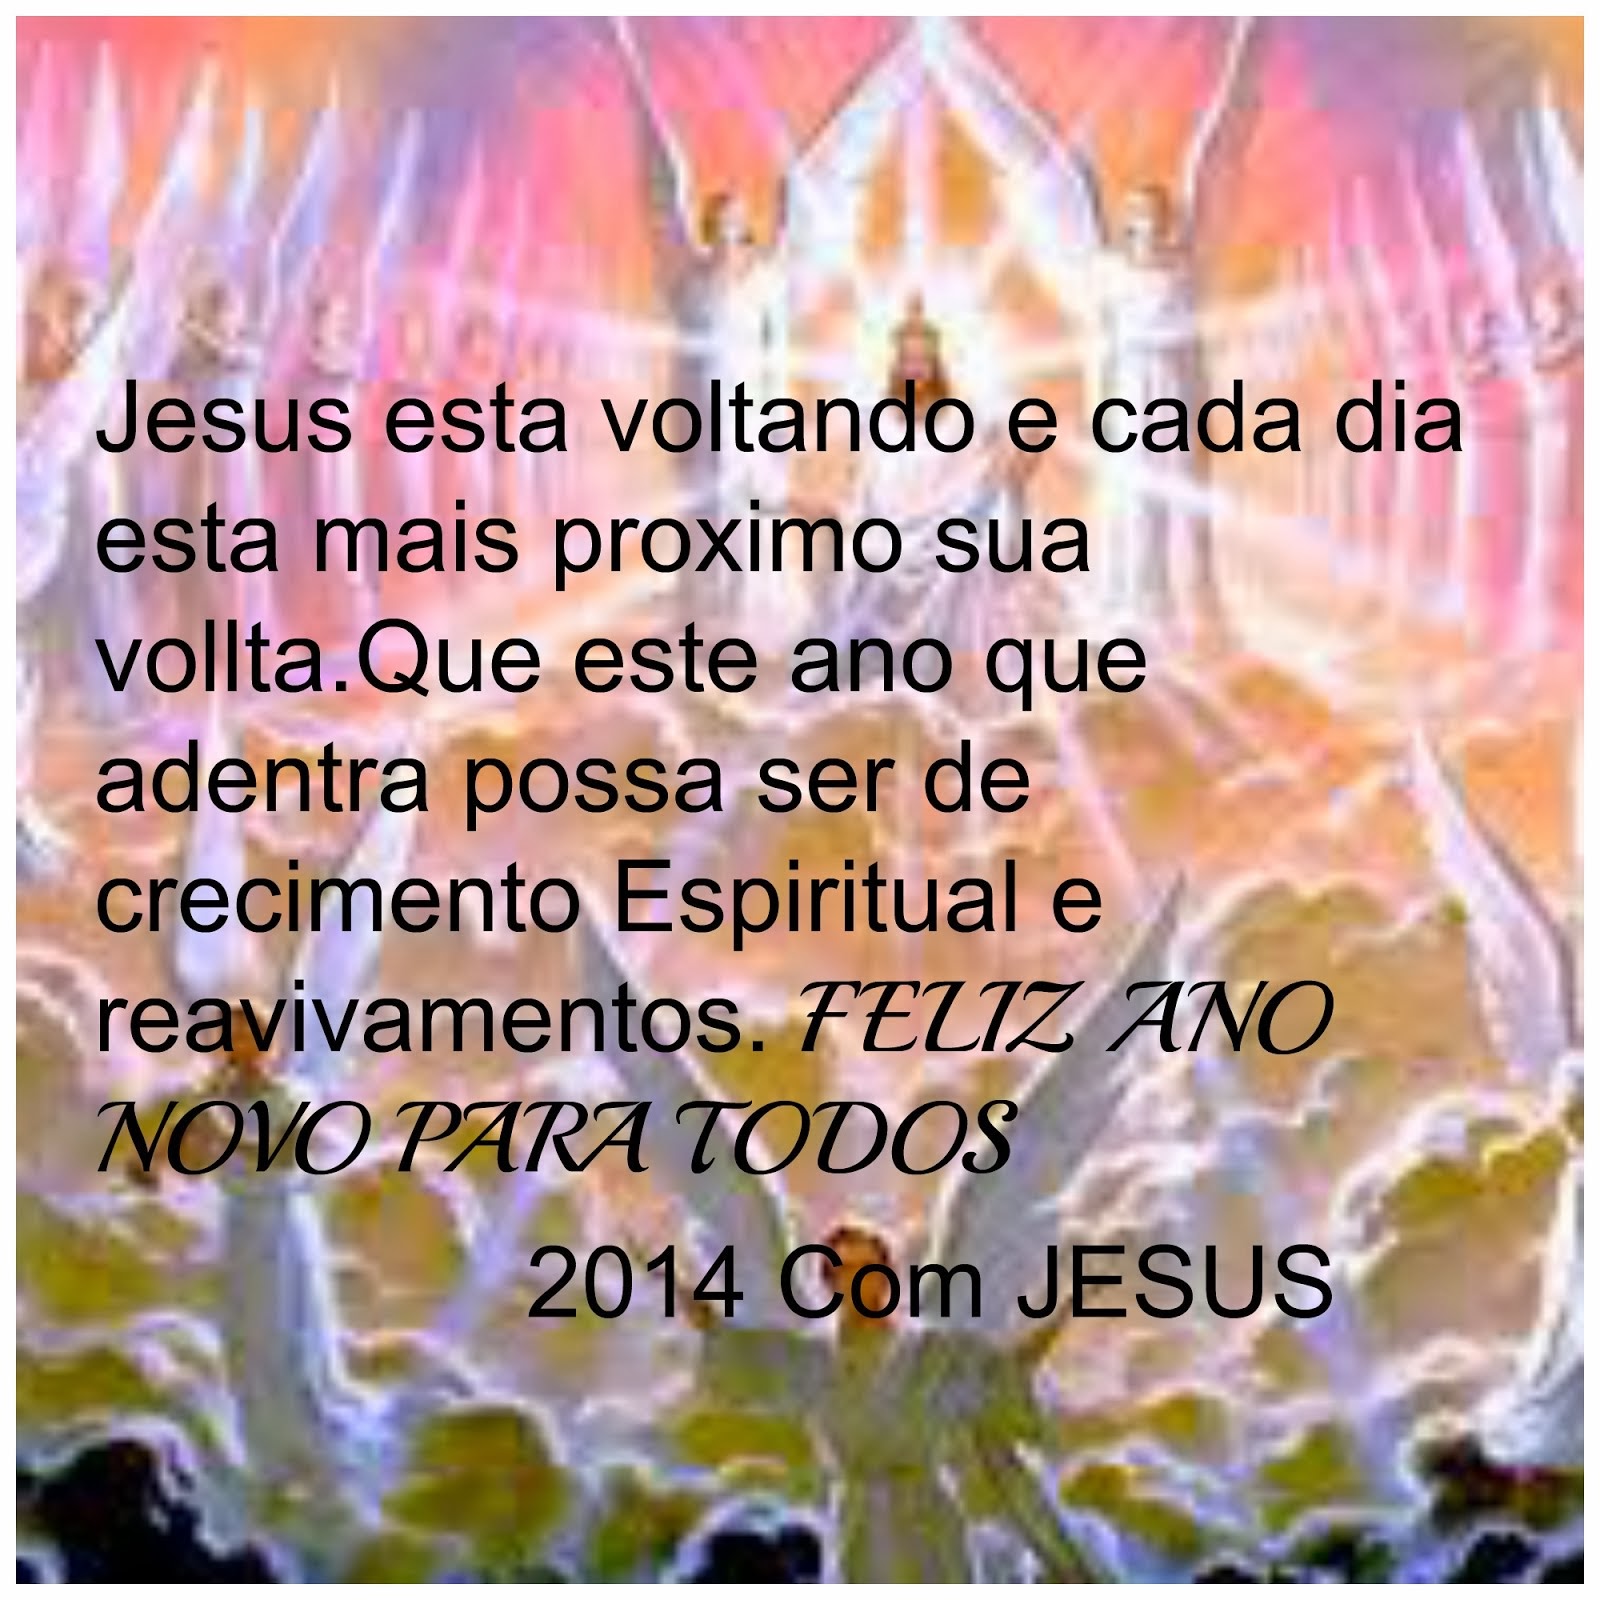 SUCESSO,FELICIDADES E MAIS A PROXIMIDADE COM JESUS.